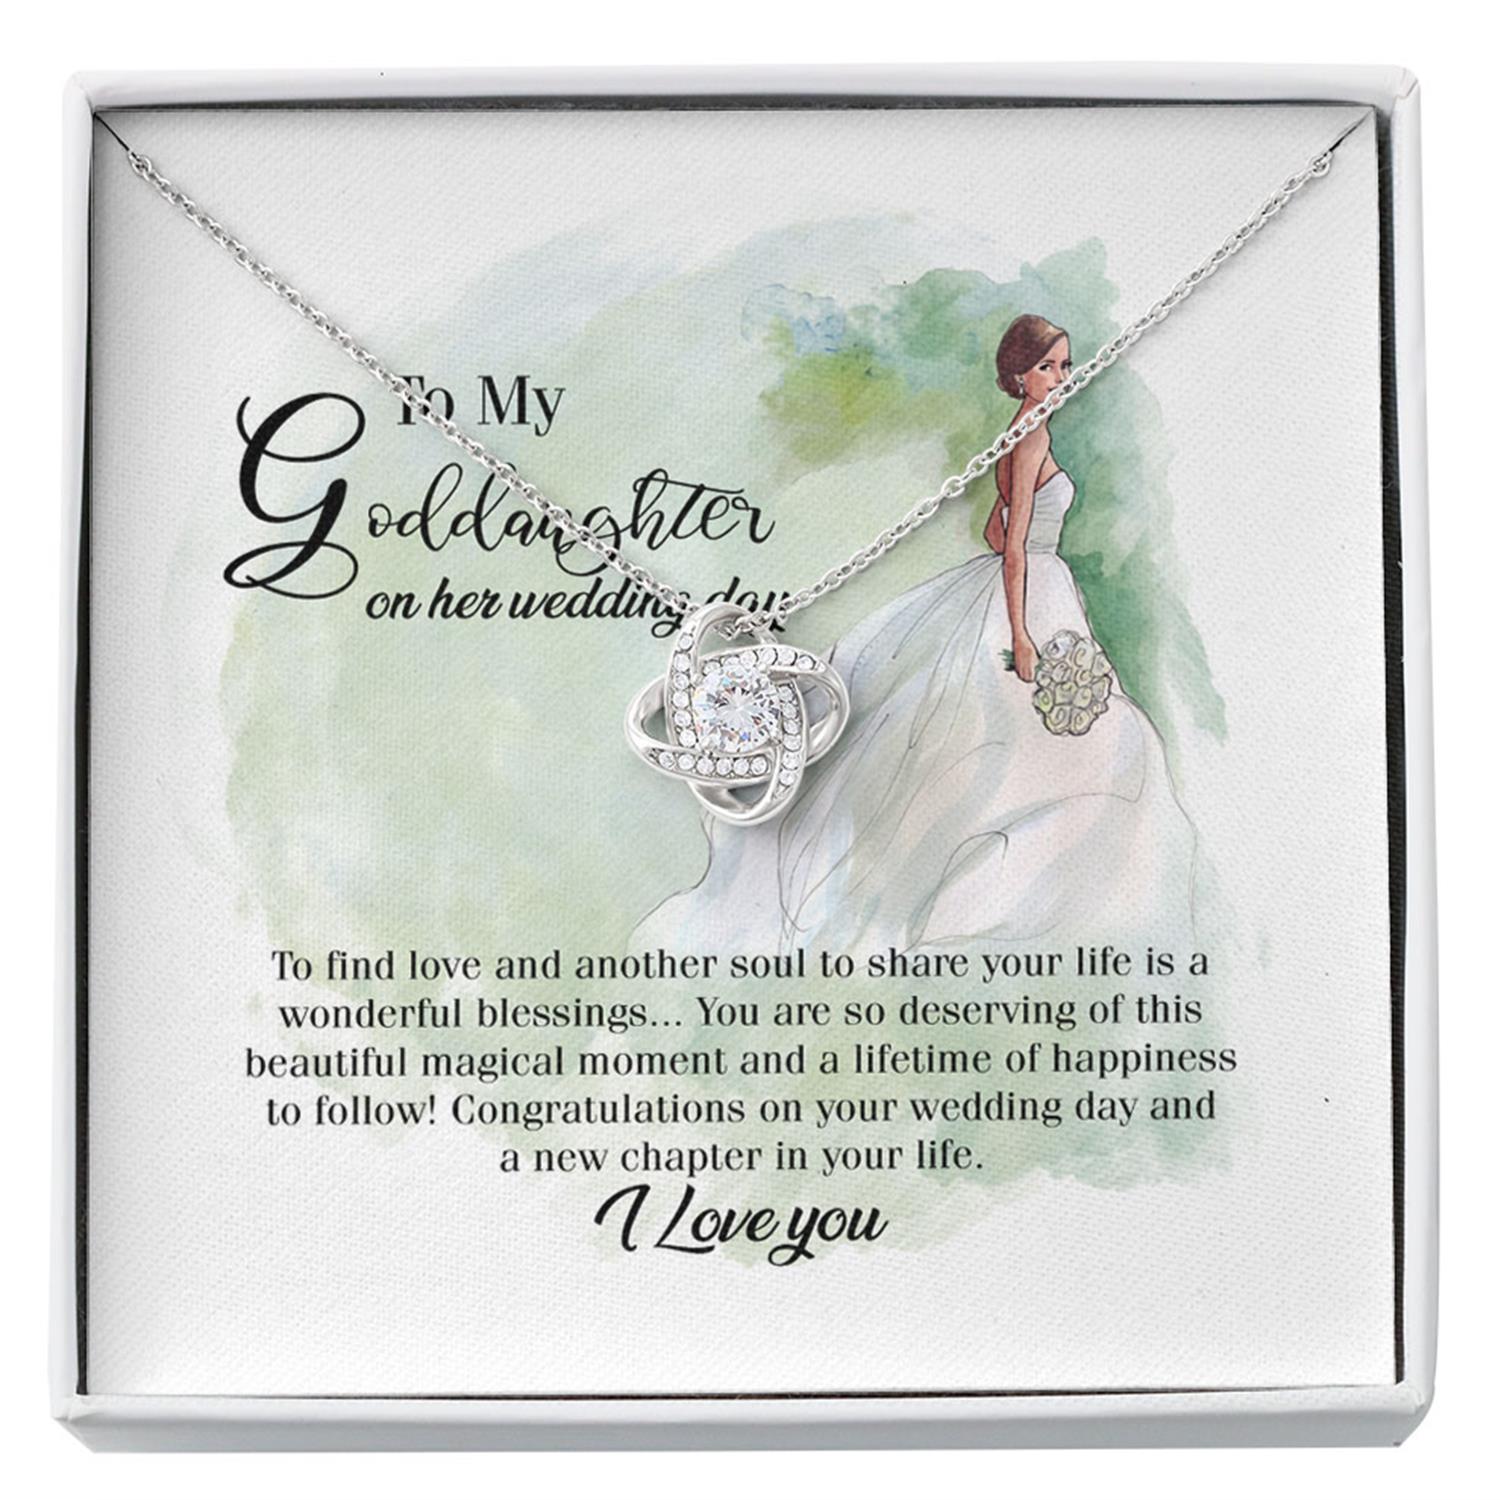 Goddaughter Necklace, Goddaughter Wedding Necklace, Gift For Goddaughter On Her Wedding Day Custom Necklace